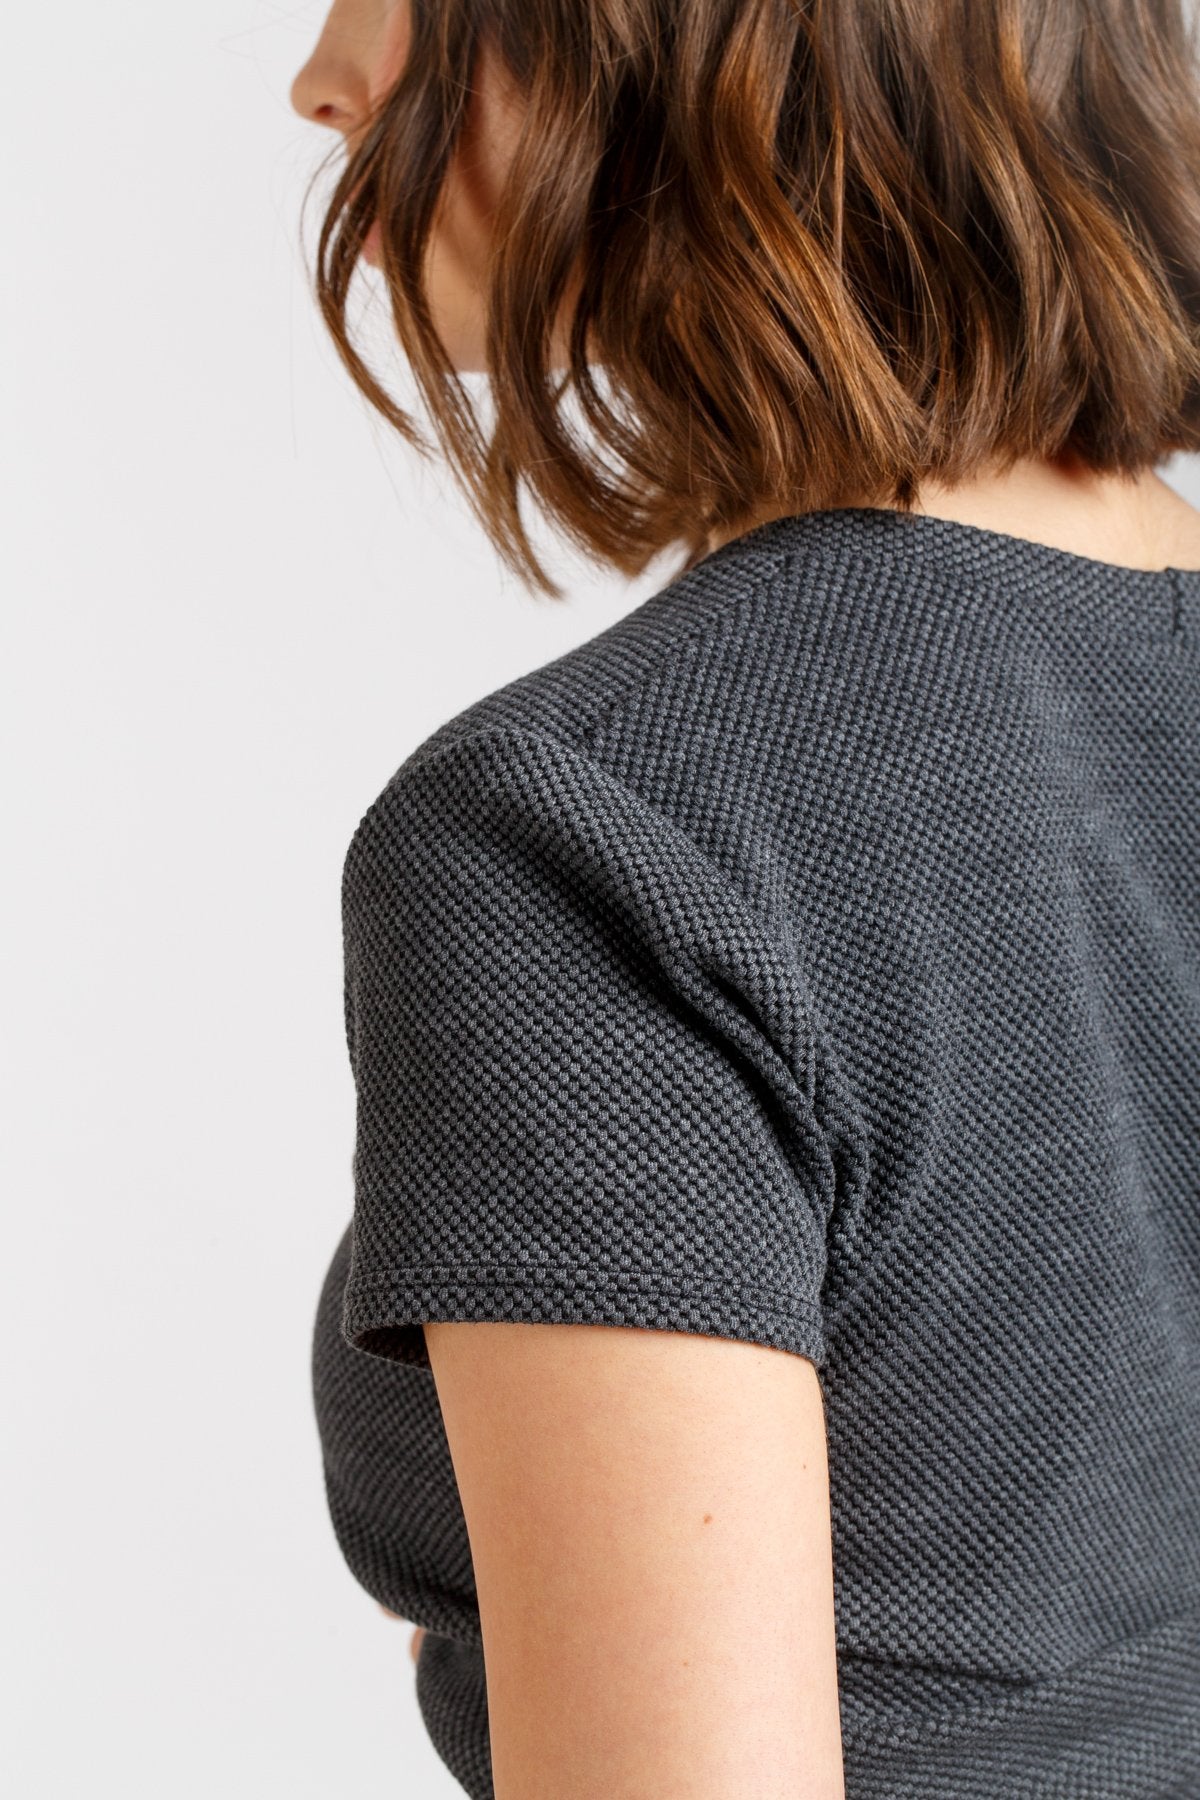 Megan Nielsen Briar Sweater and T-Shirt